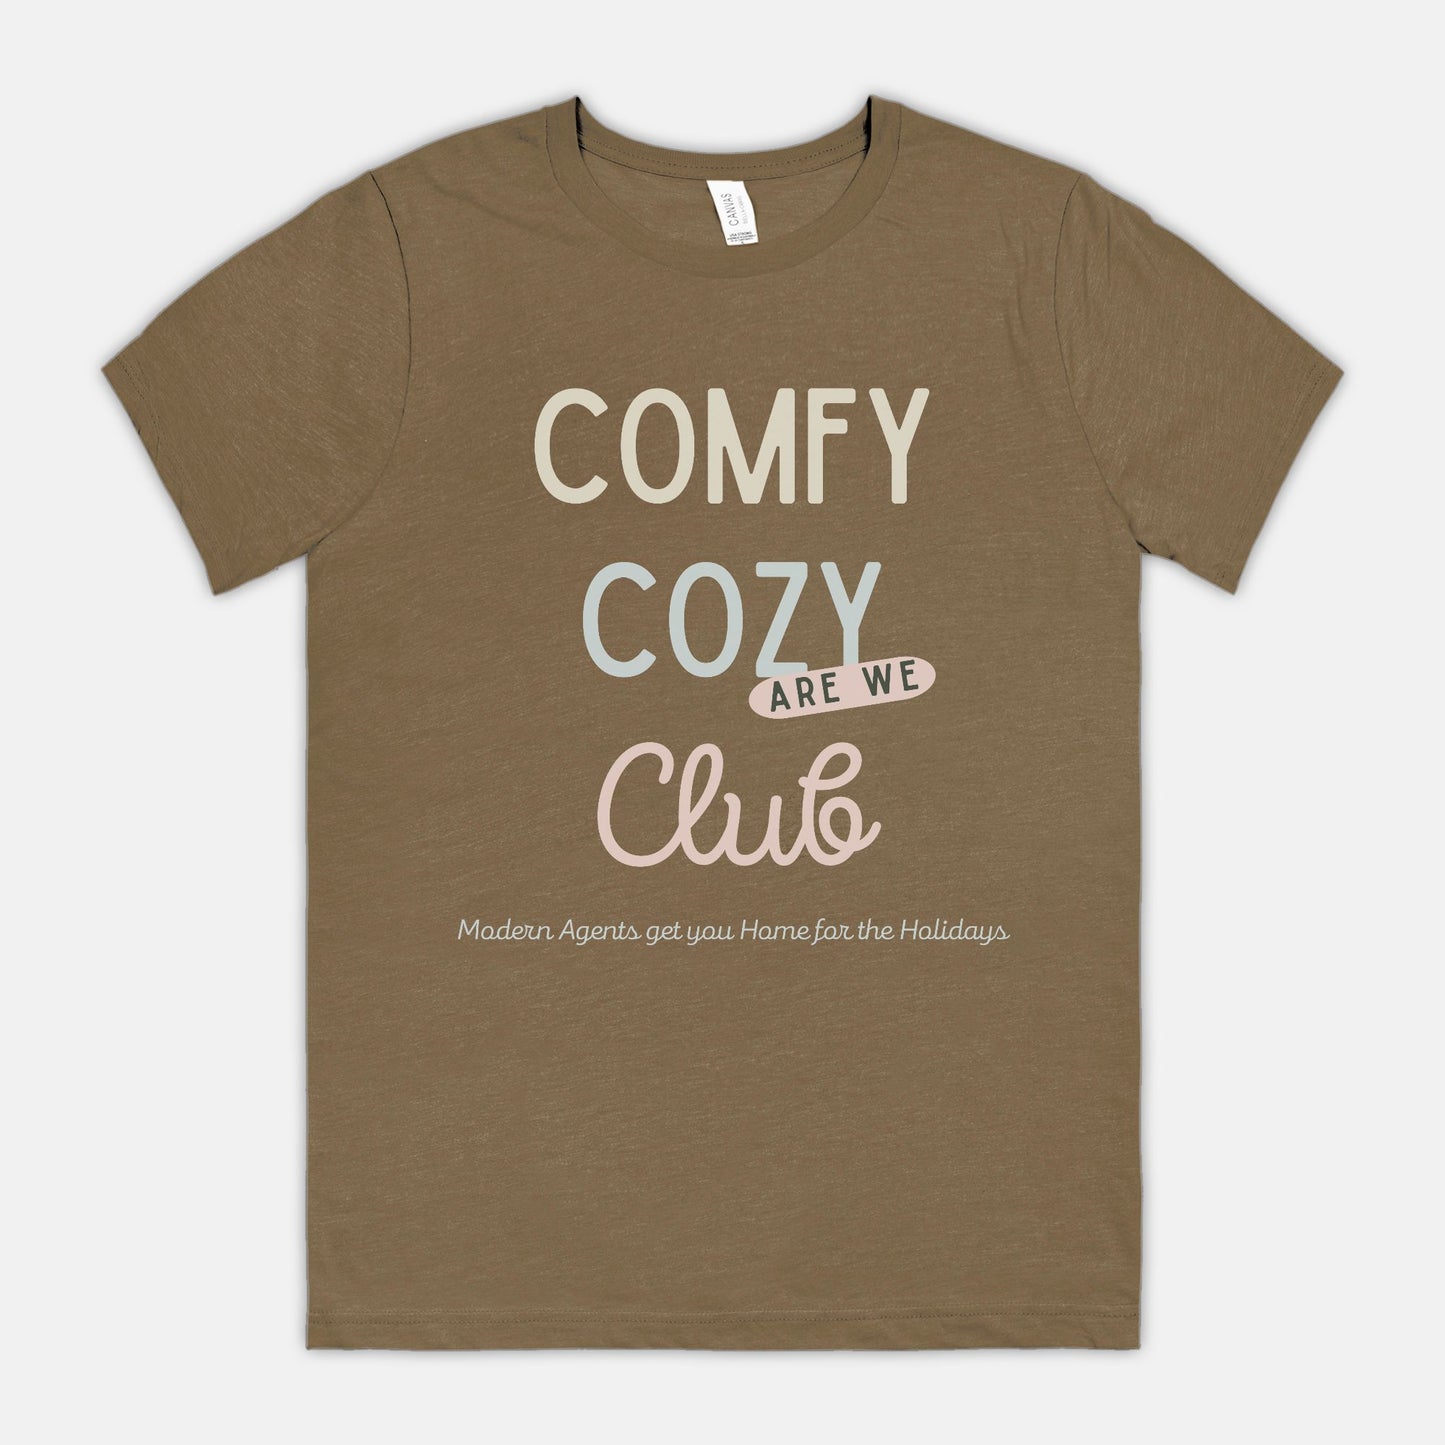 Comfy Cozy Are We Club Tee